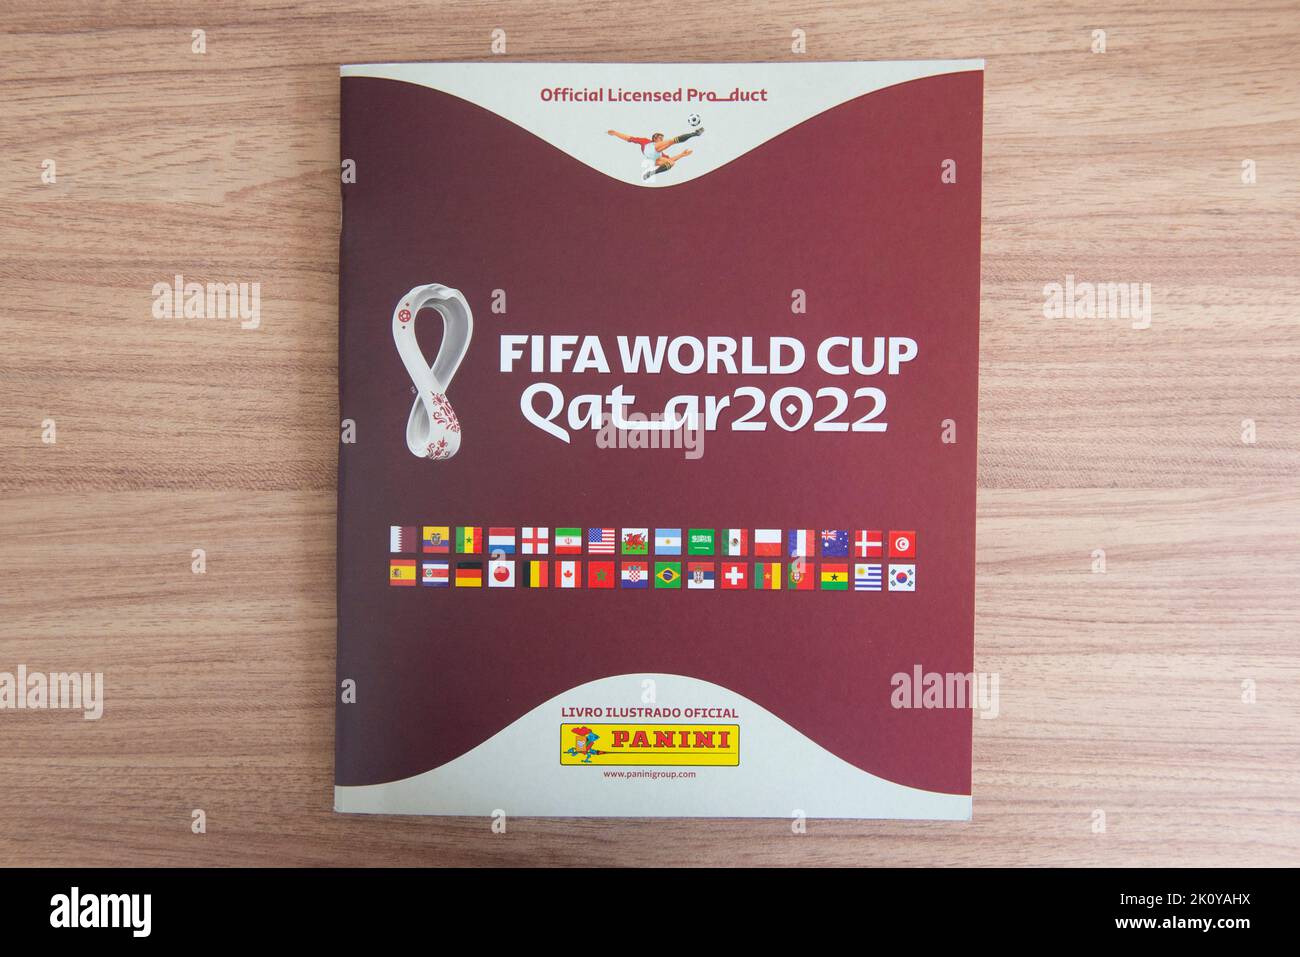 Bauru, Brésil - 09.12.22: Vue de dessus de Panini Album coupe du monde de la Fifa 2022 - Qatar sur le bureau. Autocollants de collection des joueurs des équipes de la coupe du monde - Banque D'Images